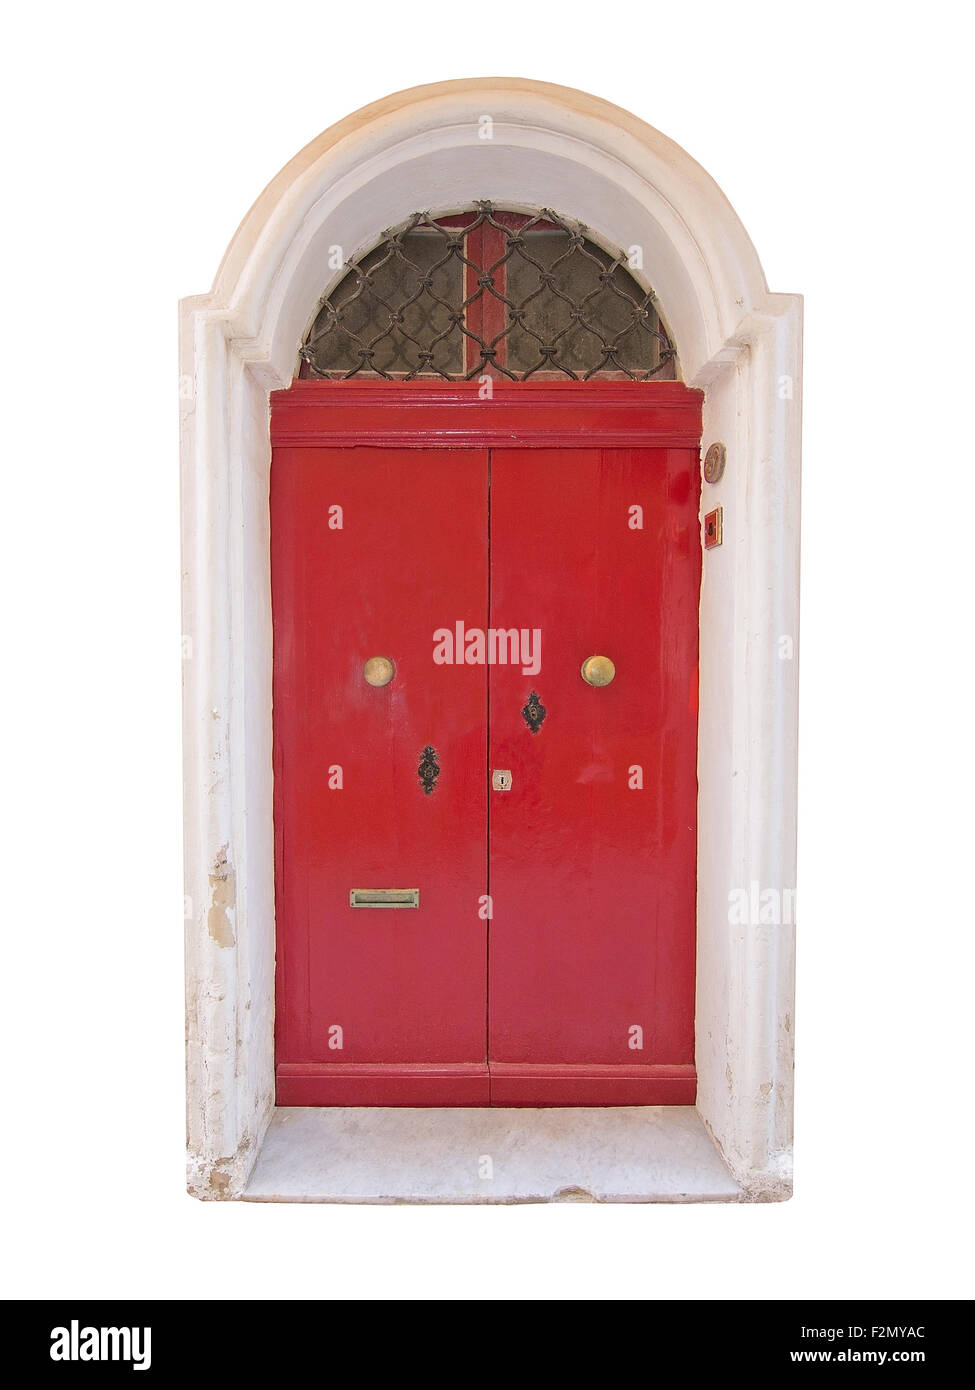 Red wooden door. Painted doors of Malta series. Stock Photo